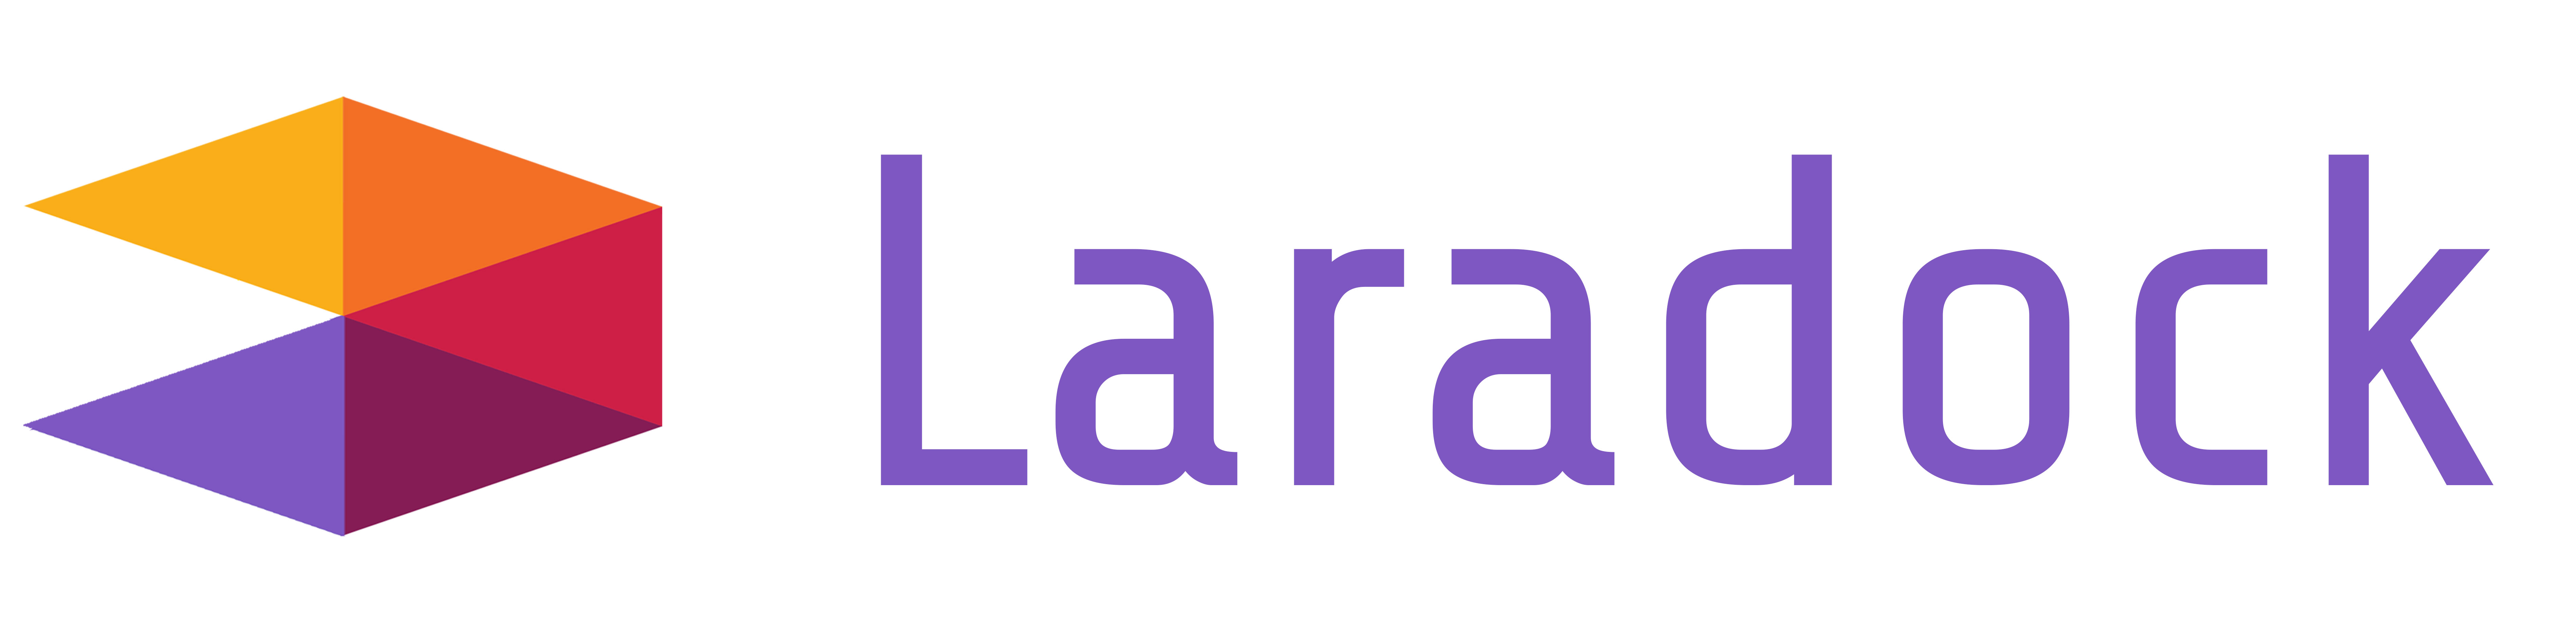 laradock logo